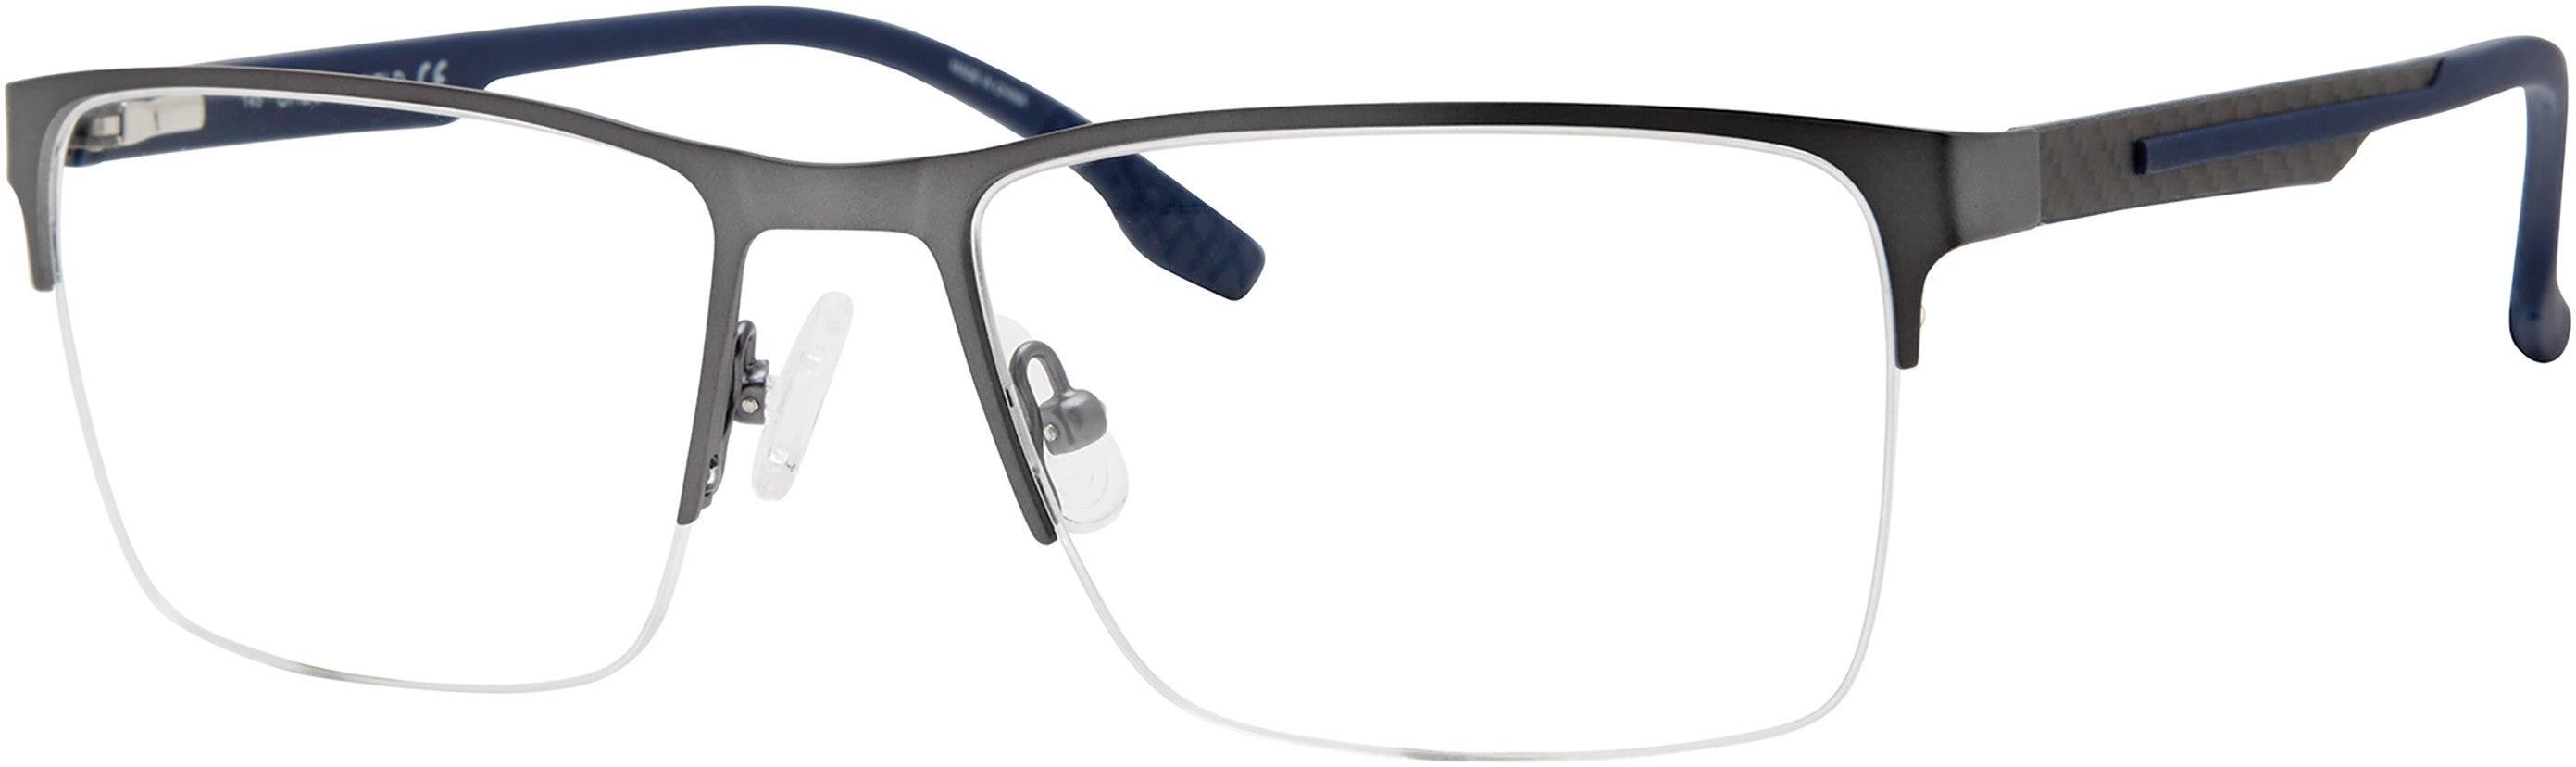  Chesterfield 69XL Rectangular Eyeglasses 0FRE-0FRE  Matte Gray (00 Demo Lens)